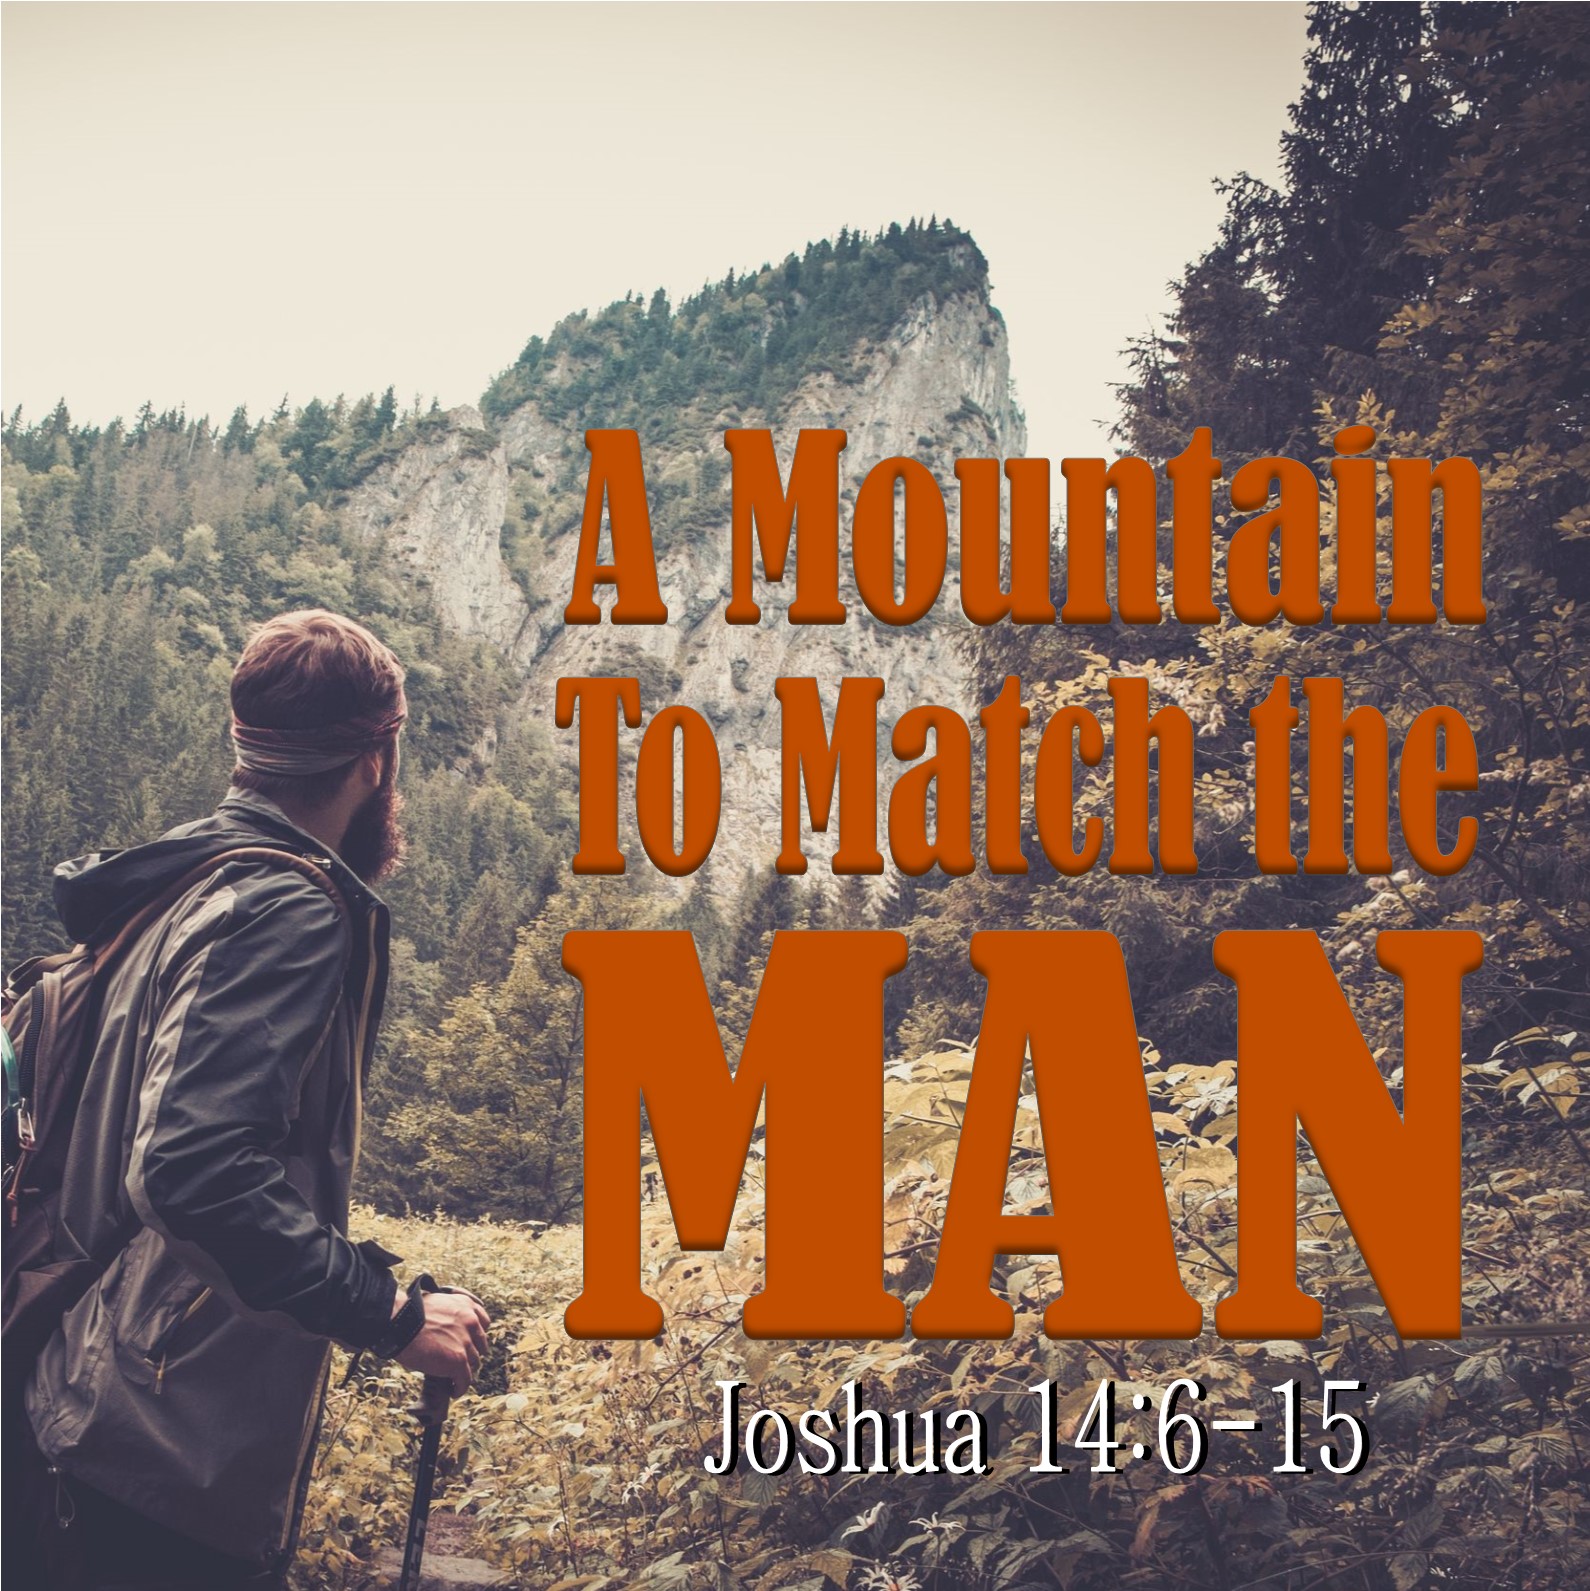 Joshua 14:6-15 